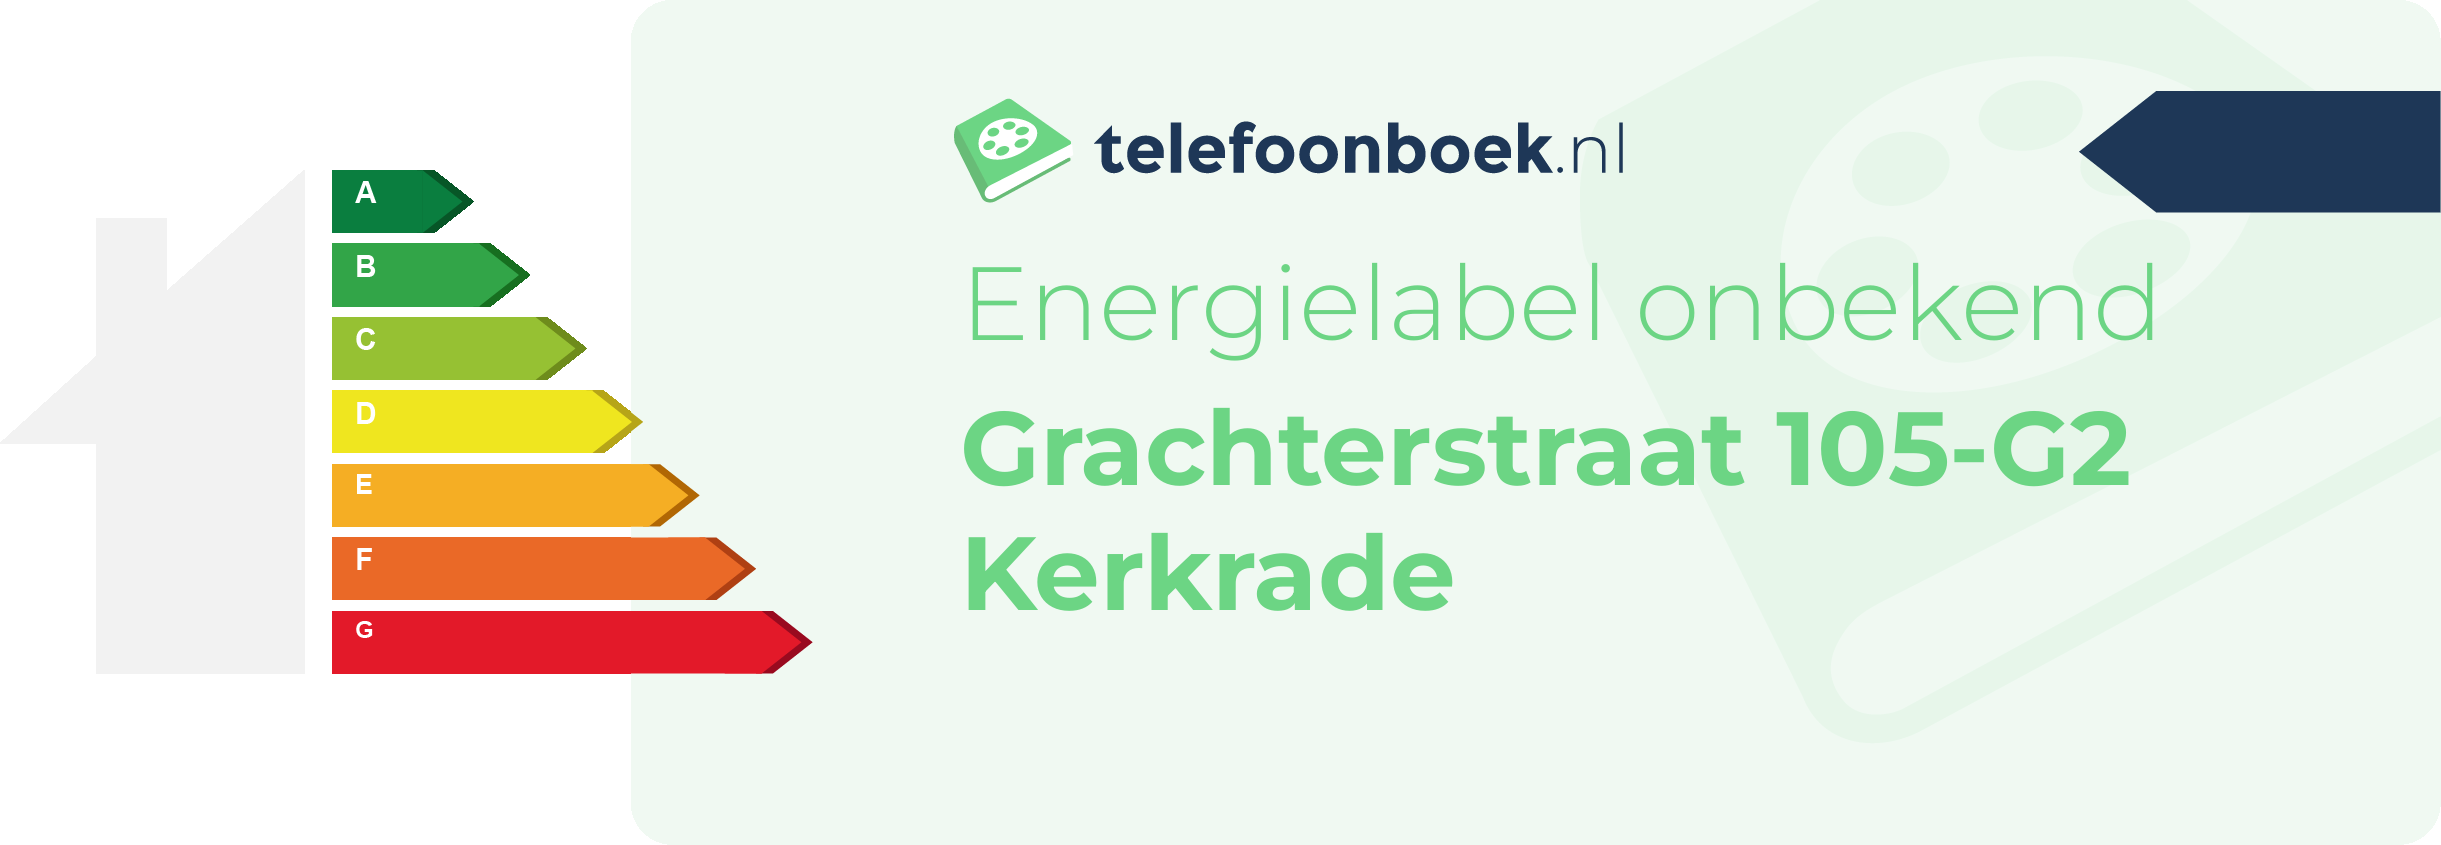 Energielabel Grachterstraat 105-G2 Kerkrade